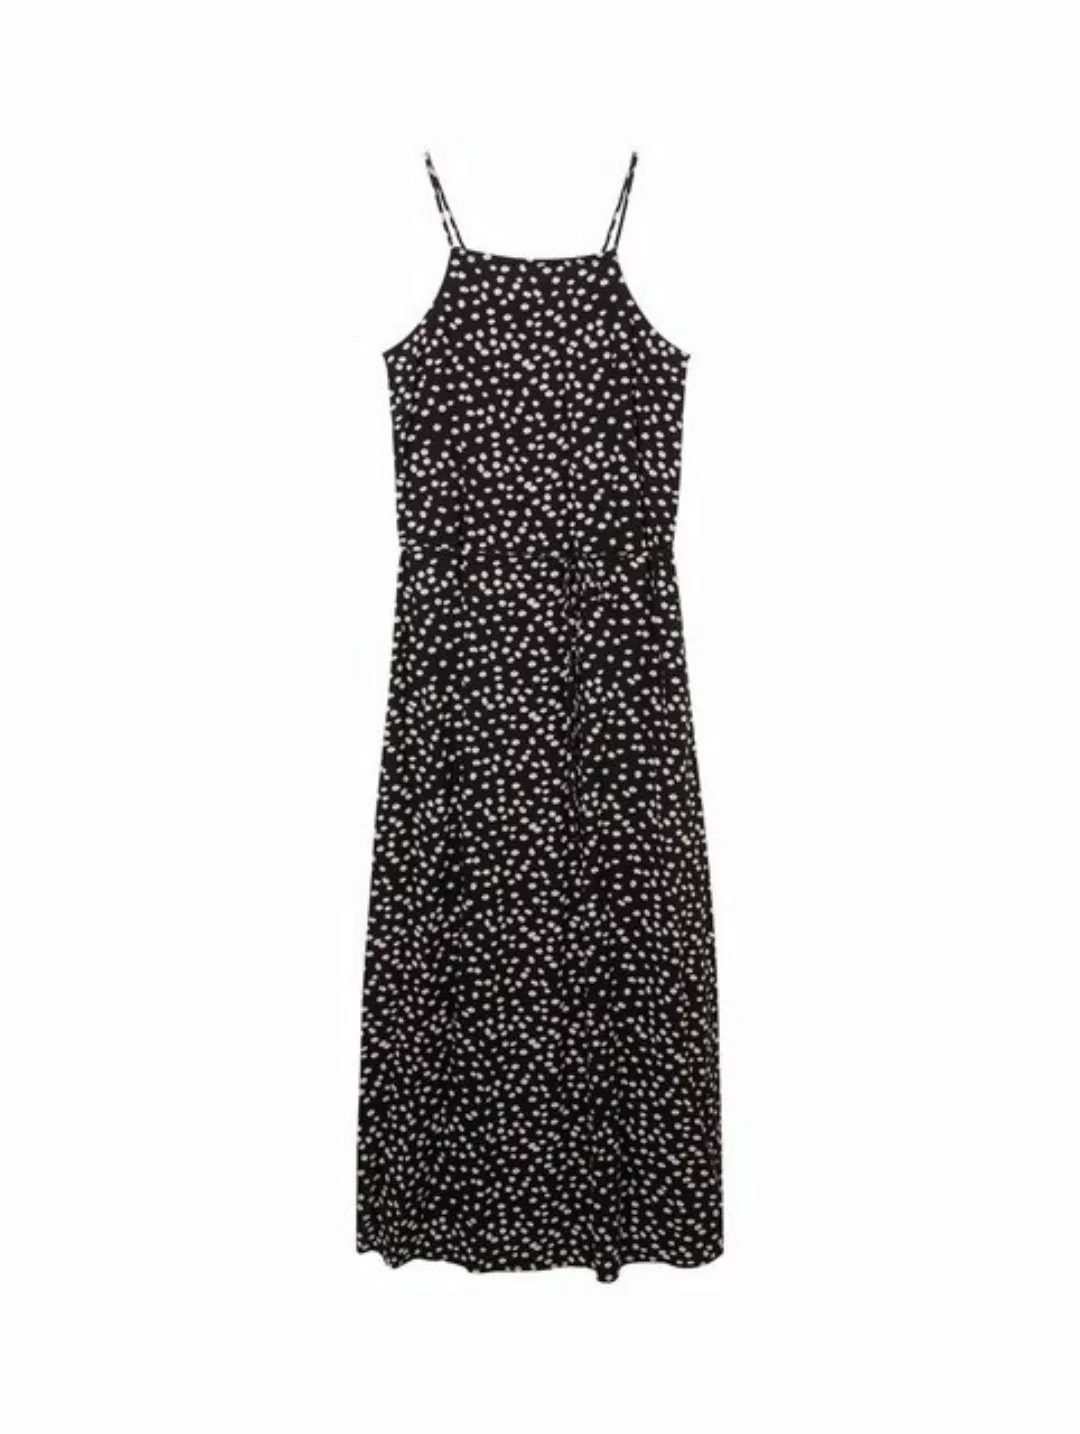 TOM TAILOR Denim Sommerkleid halterneck maxi dress, black flower minimal pr günstig online kaufen